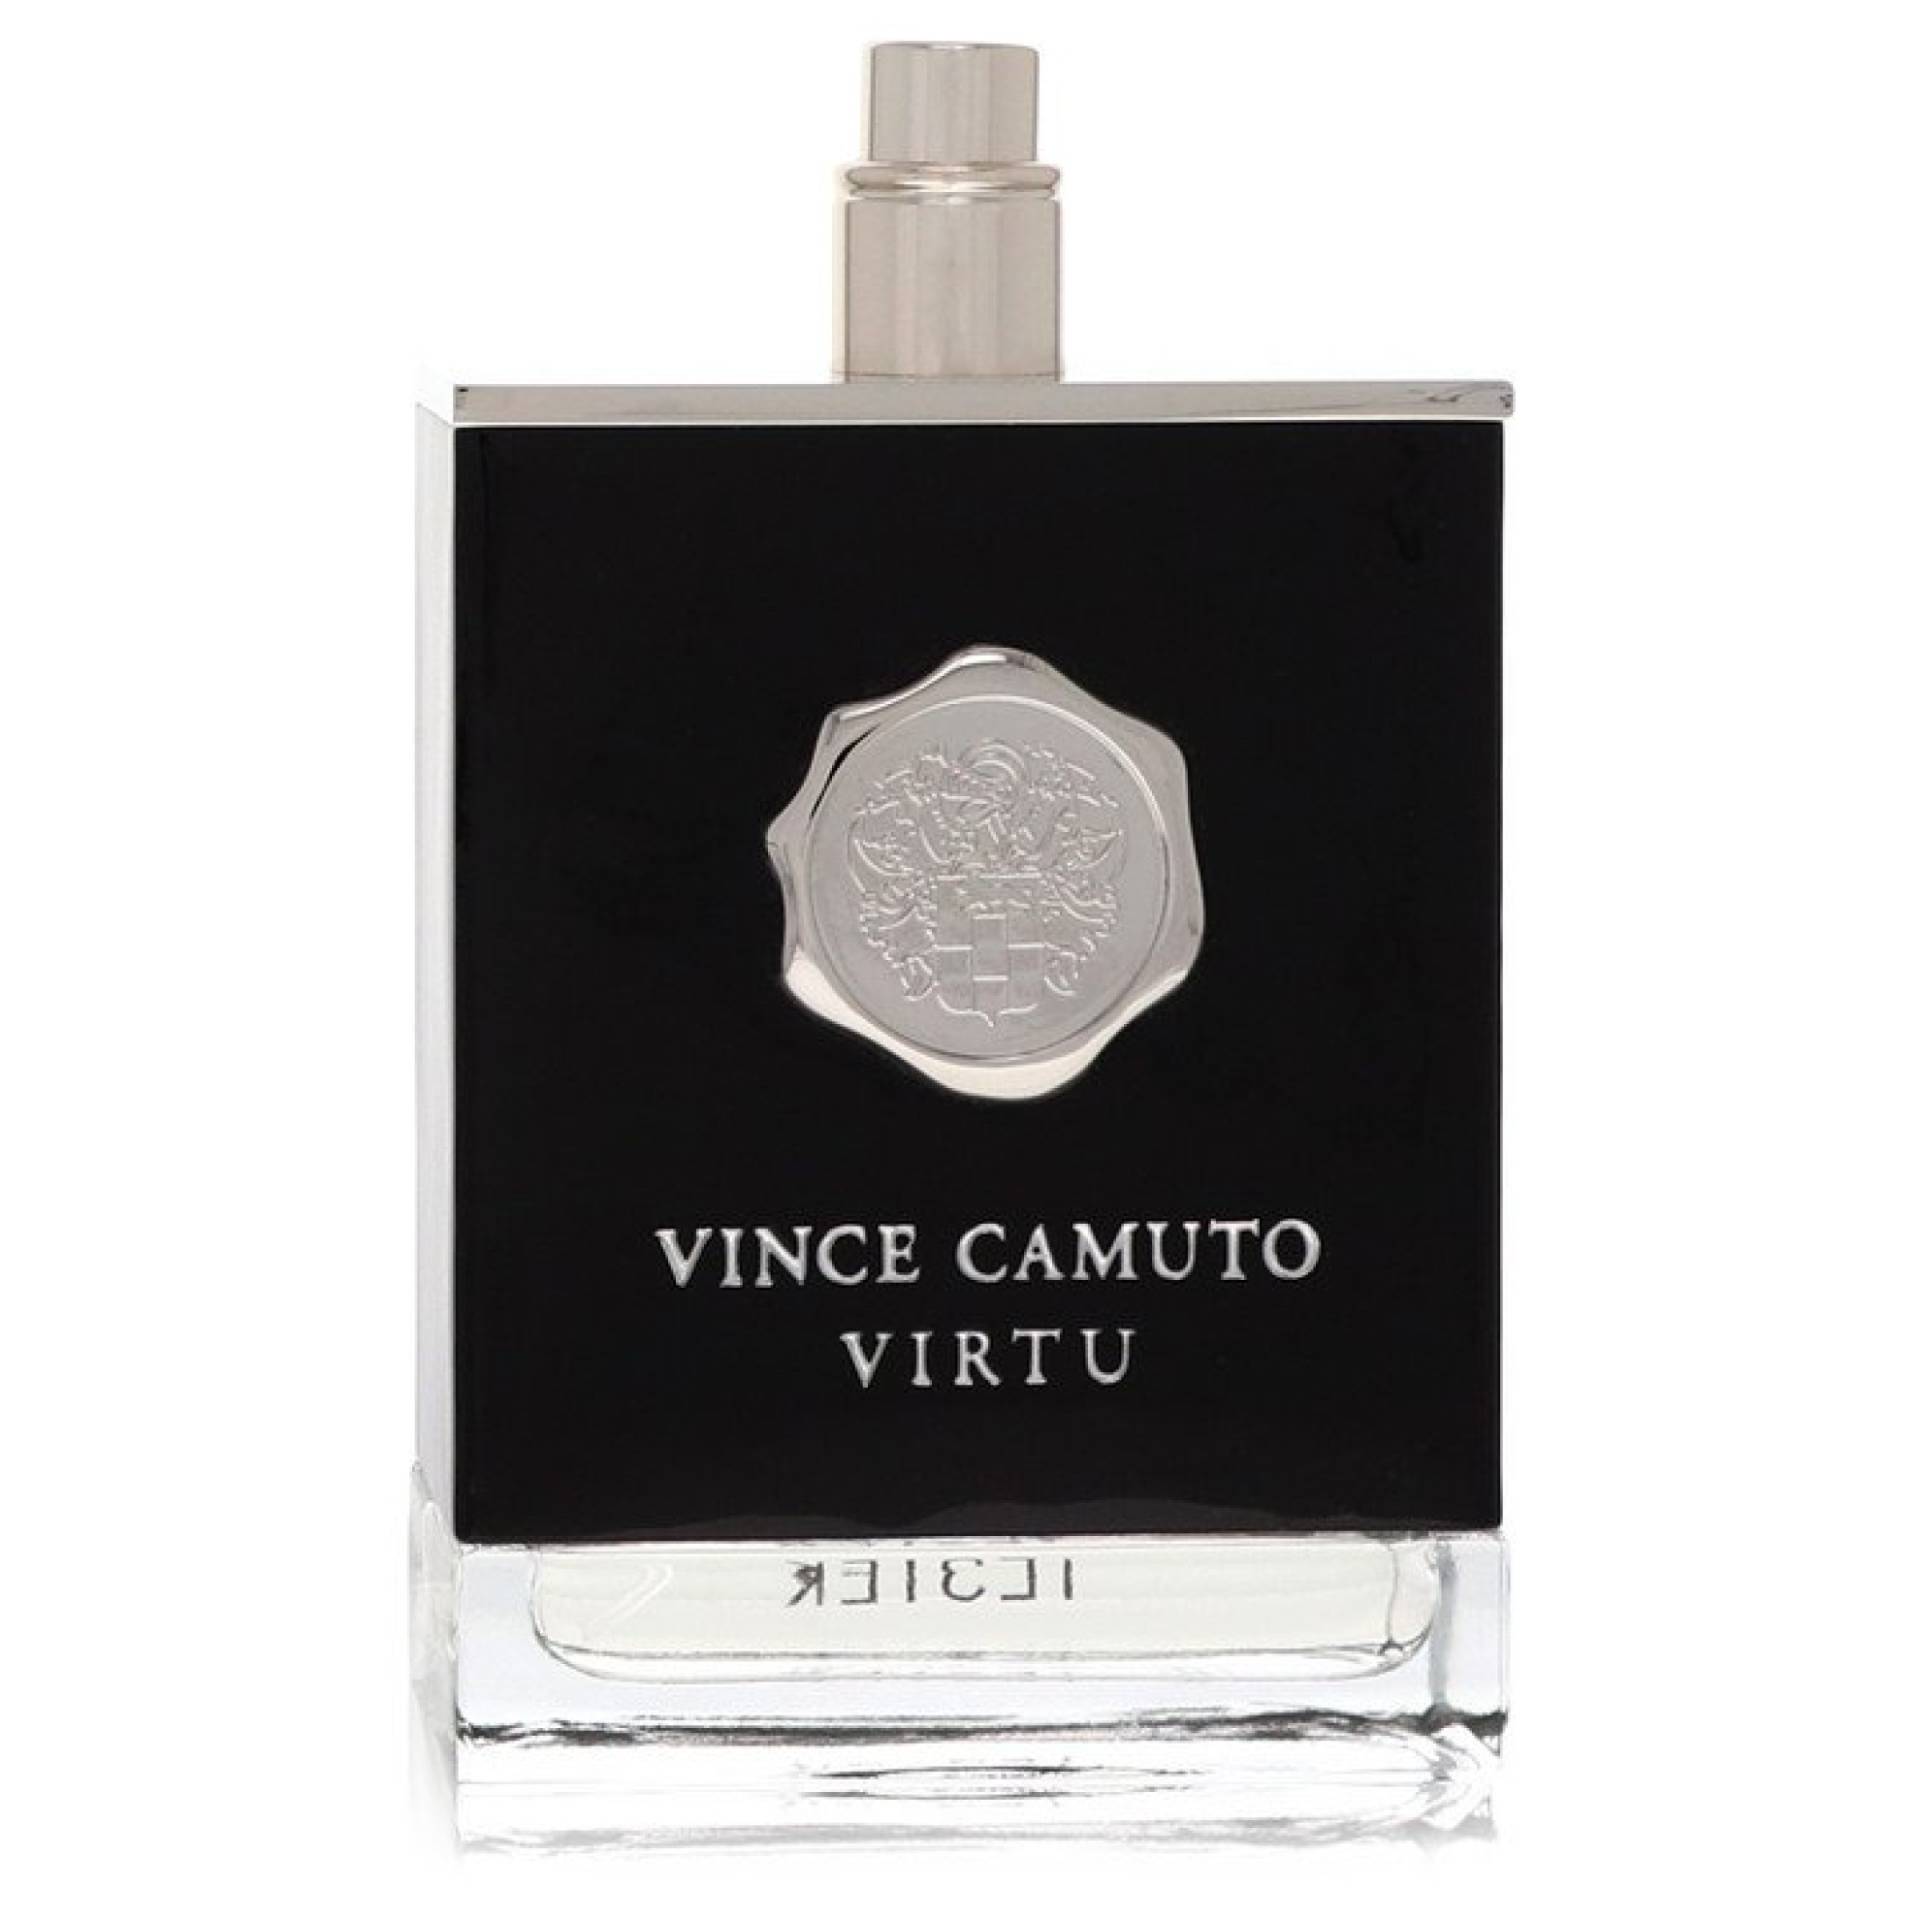 Vince Camuto Virtu Eau De Toilette Spray (Tester) 101 ml von Vince Camuto